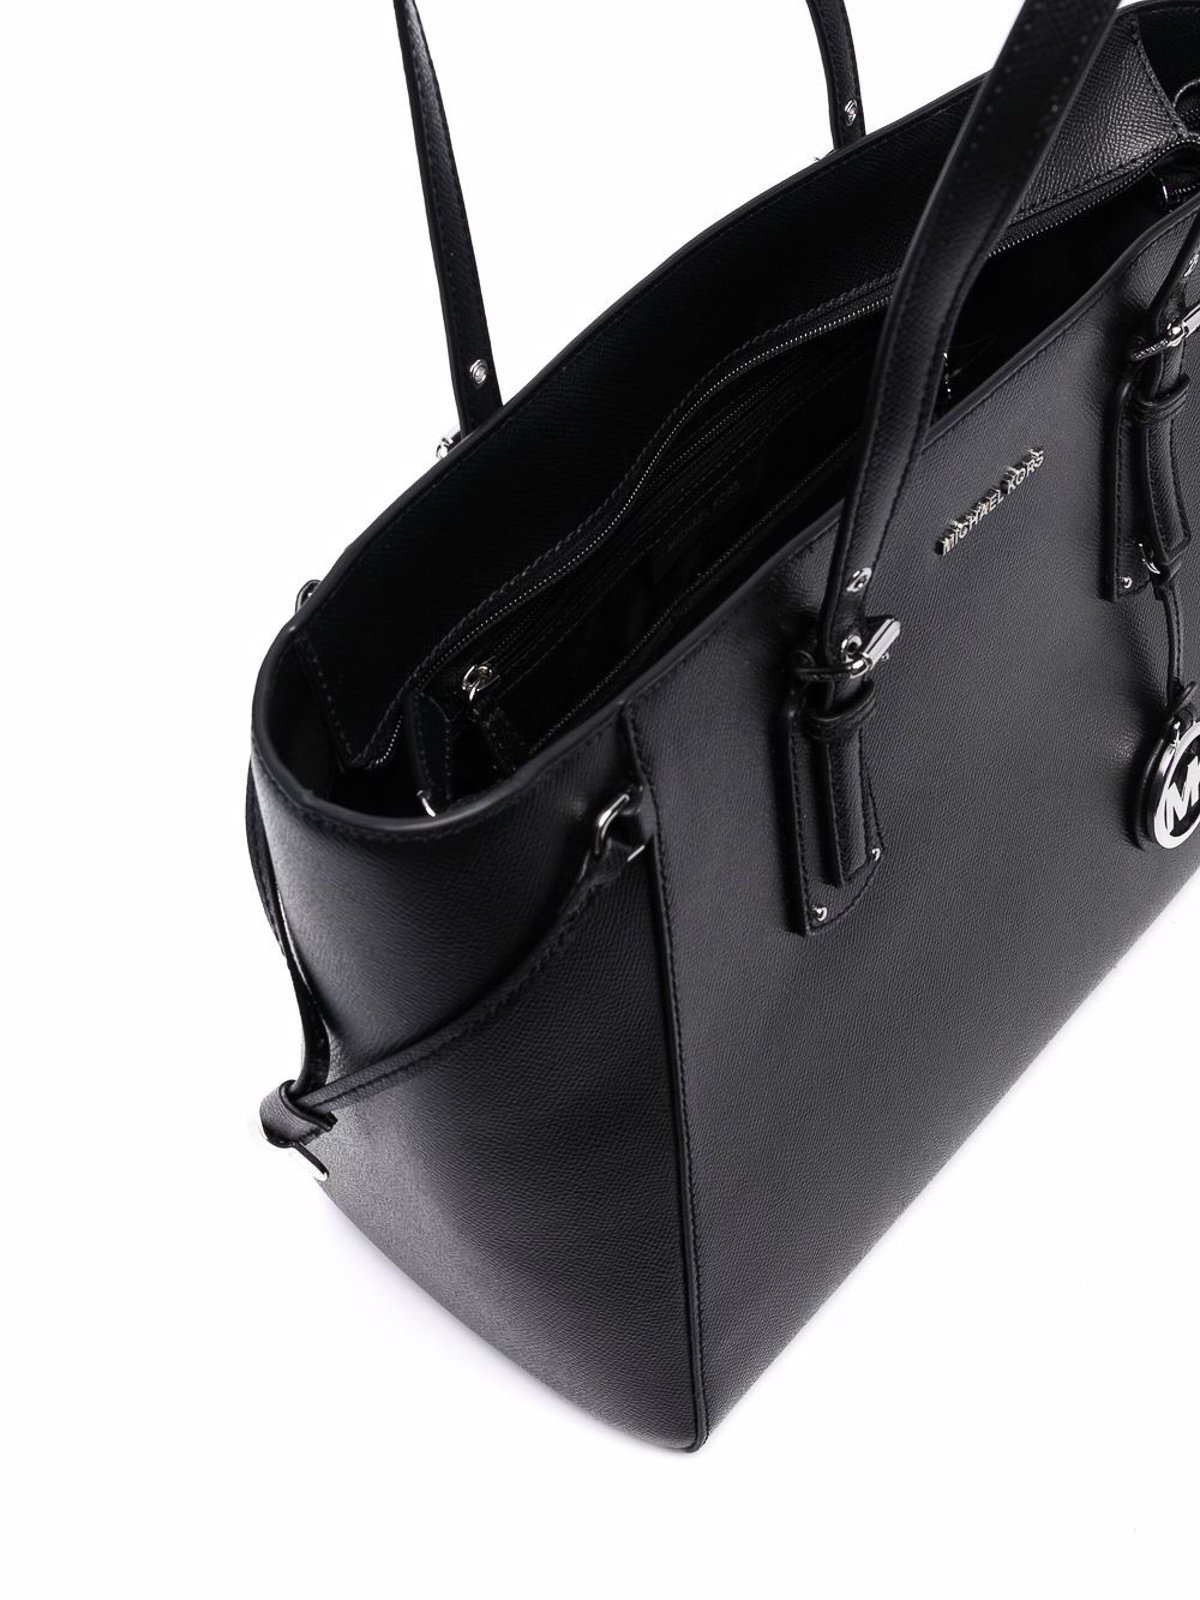 Michael Kors - Voyager Medium Handbag